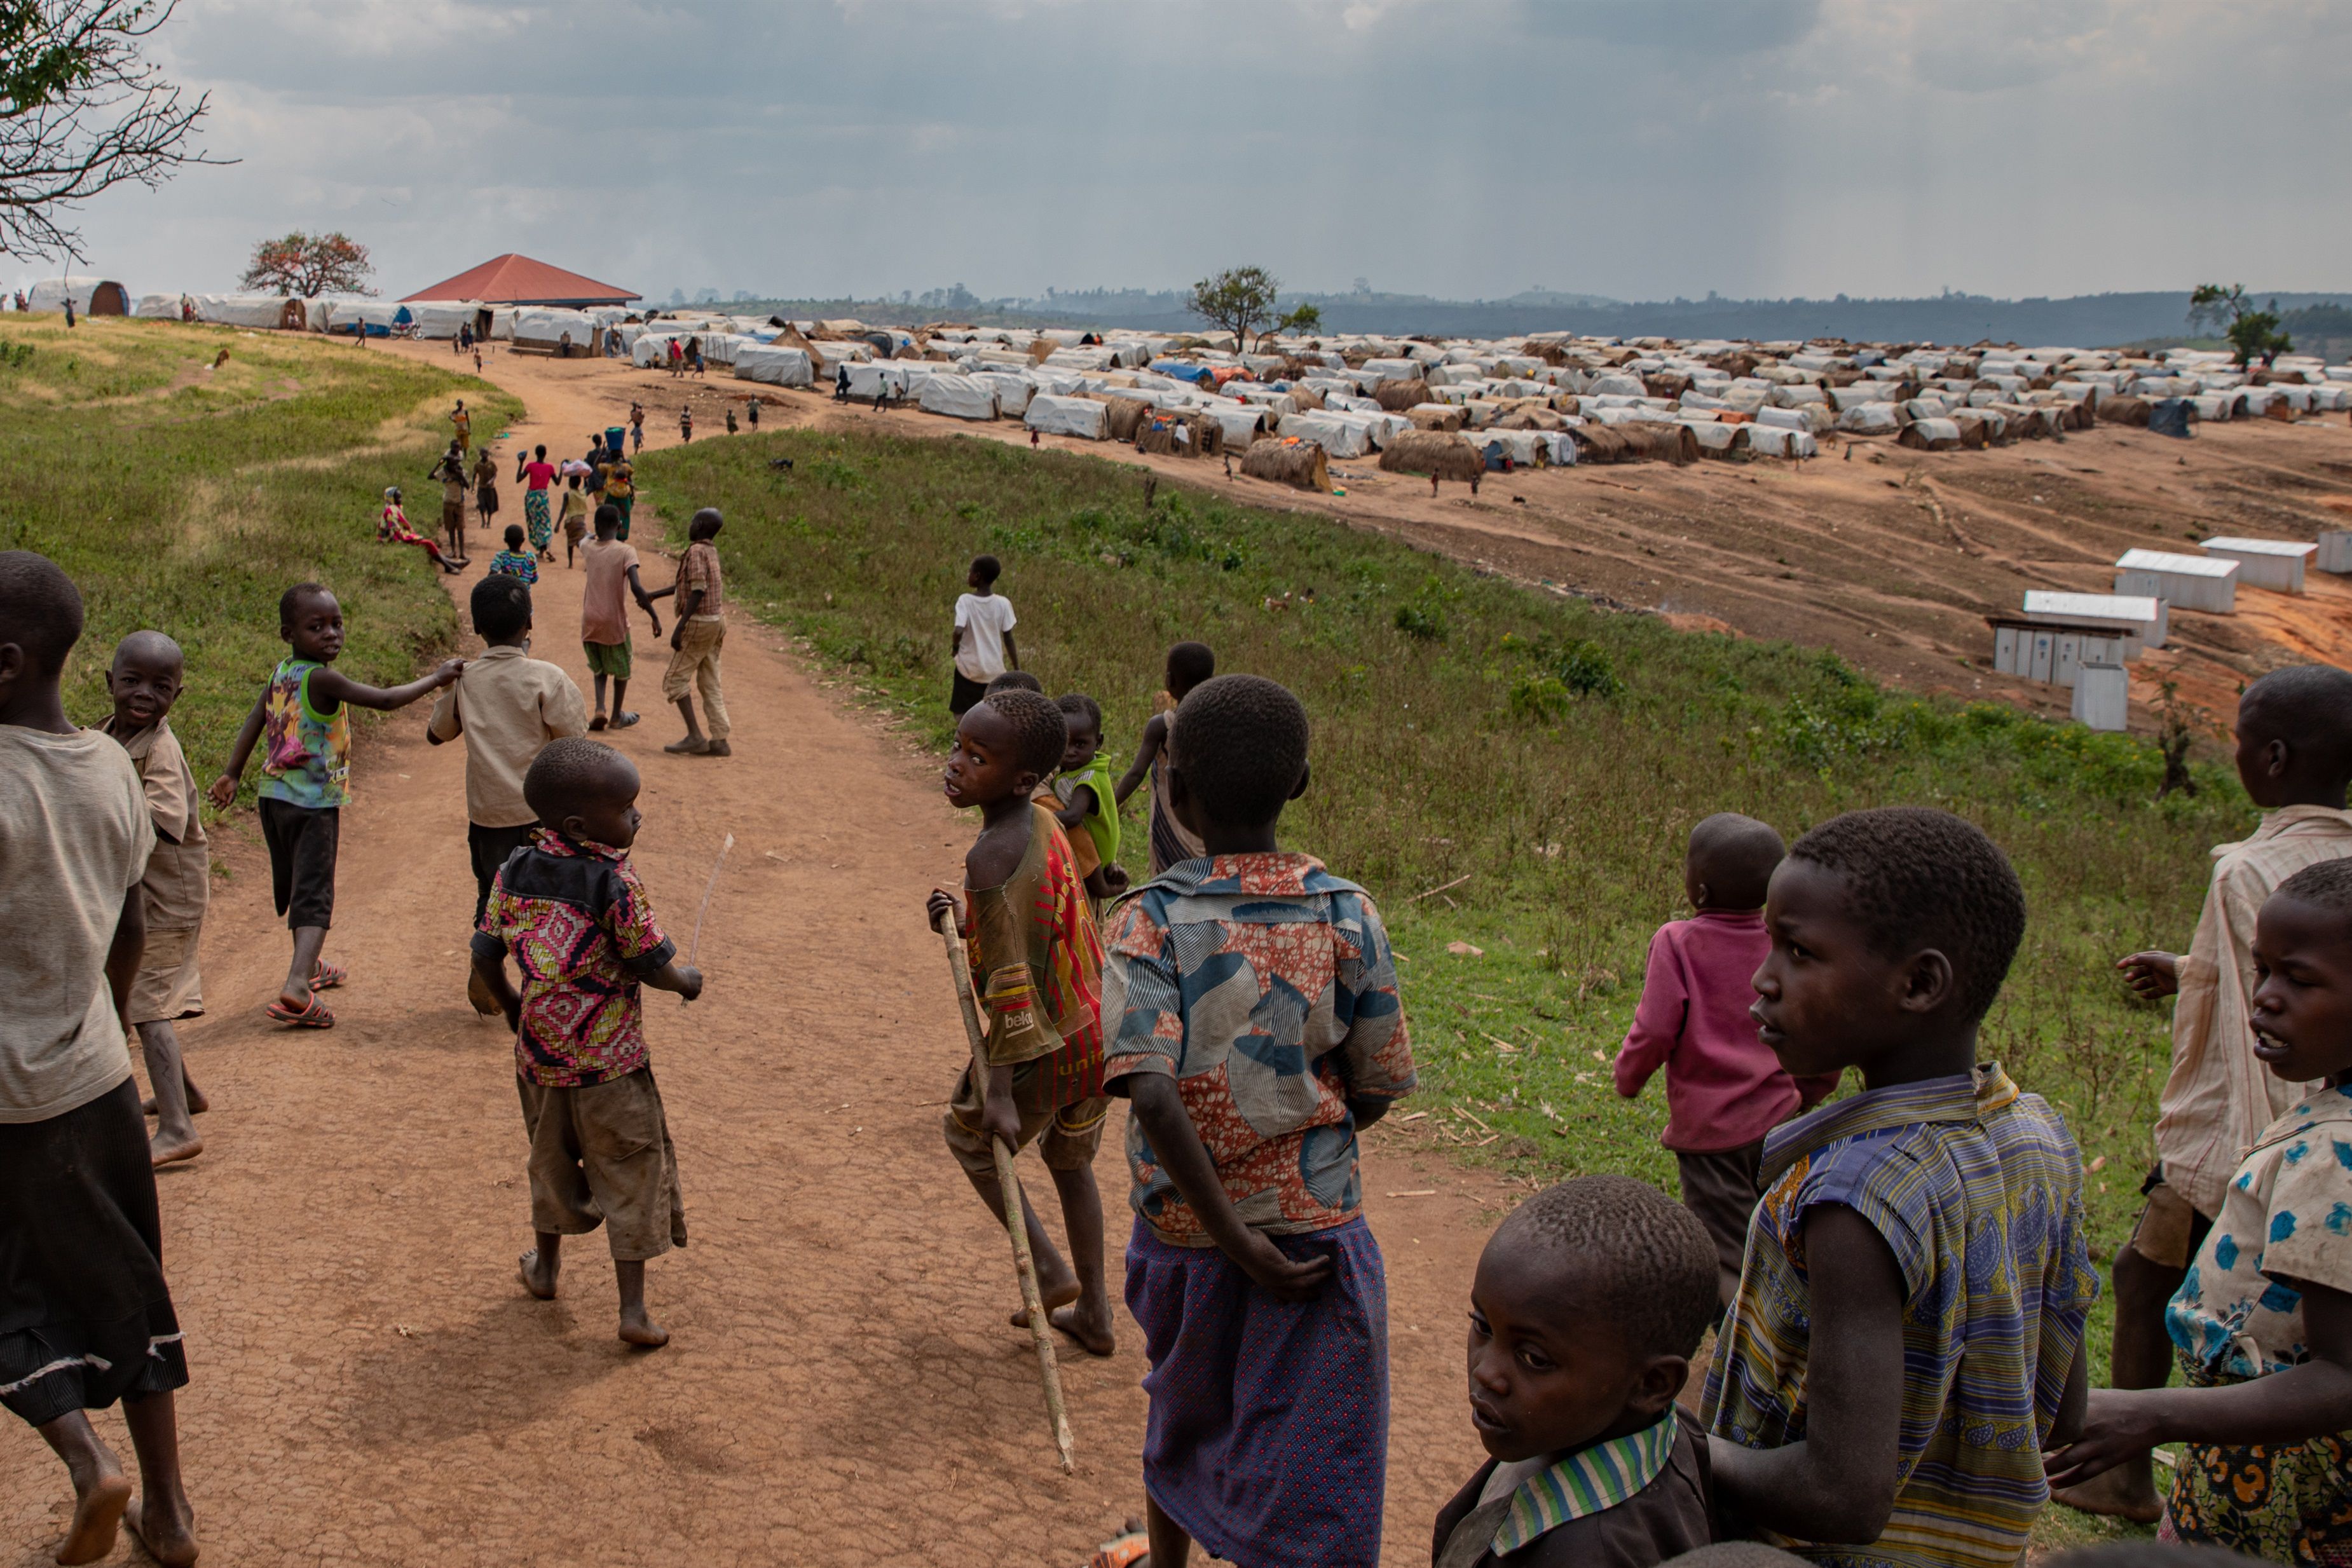 14/02/2020 Campamento de desplazados de Loda, en República Democrática del Congo
POLITICA AFRICA INTERNACIONAL REPÚBLICA DEMOCRÁTICA DEL CONGO
UNICEF/SYBILLE DESJARDINS
